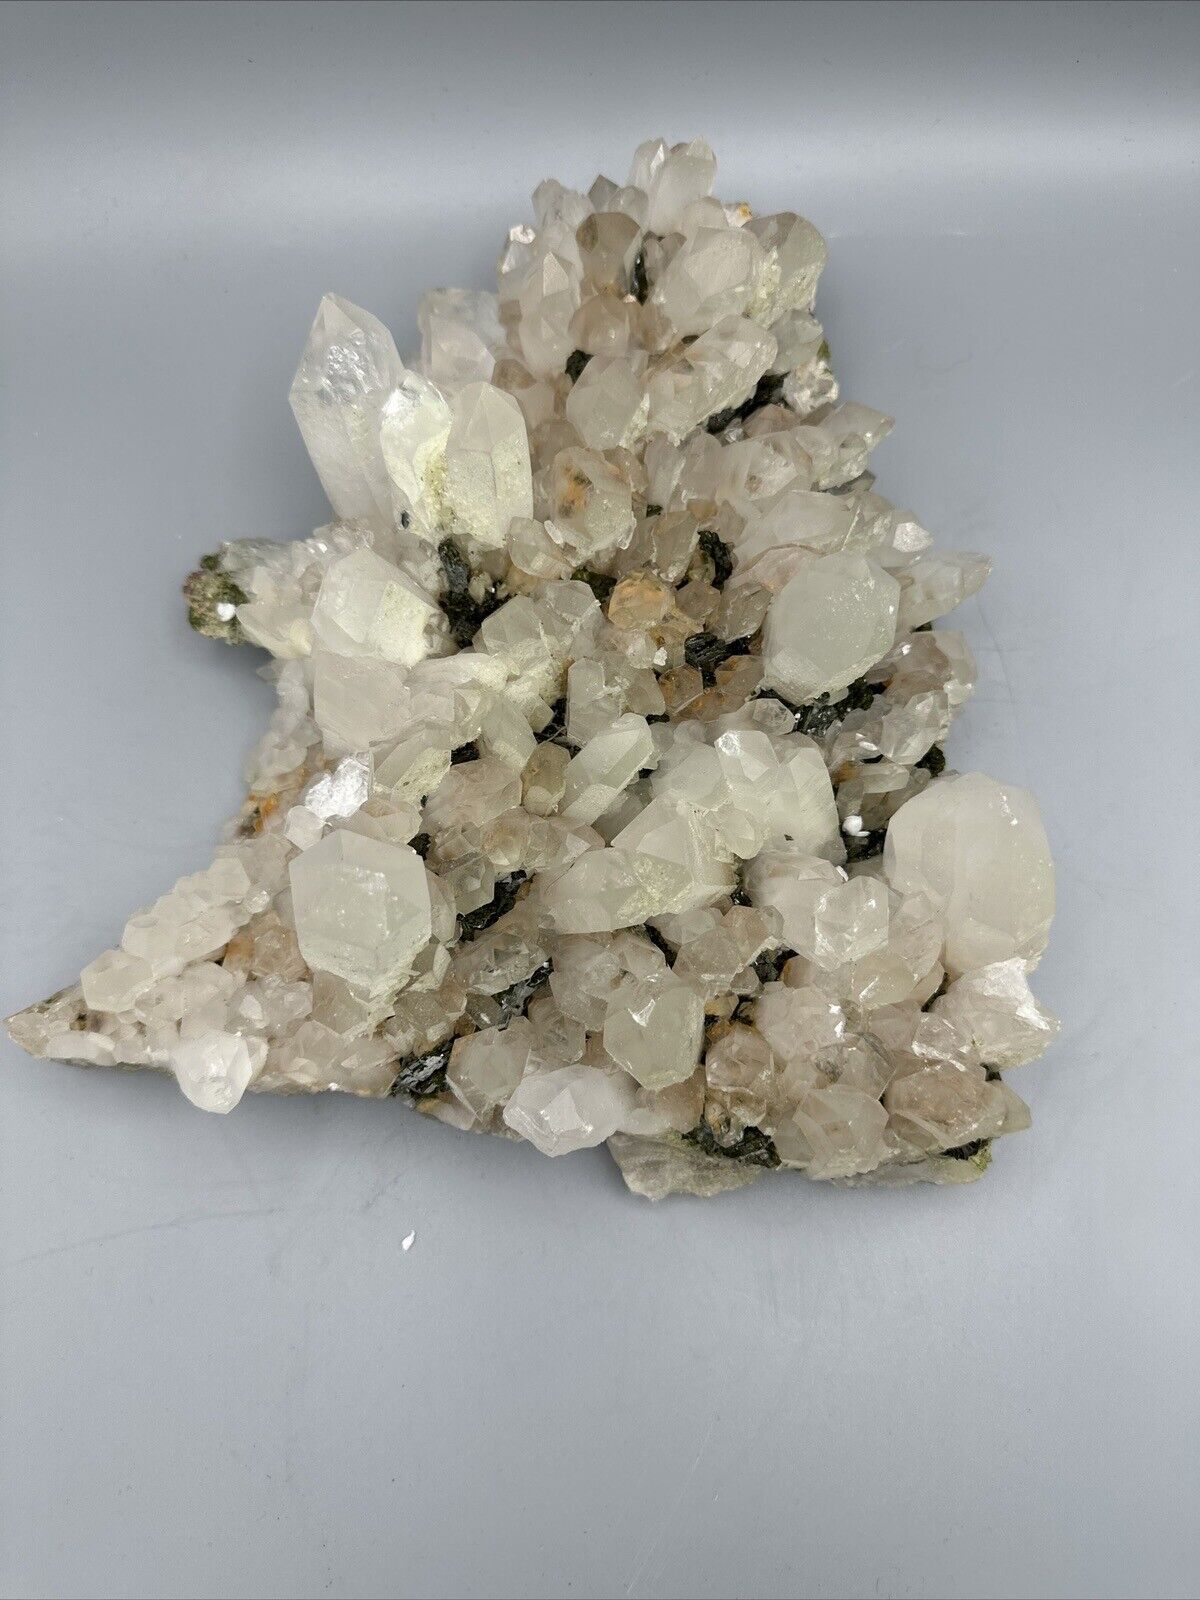 Large Chlorite Quartz with Epidote 9.5” Rare Find